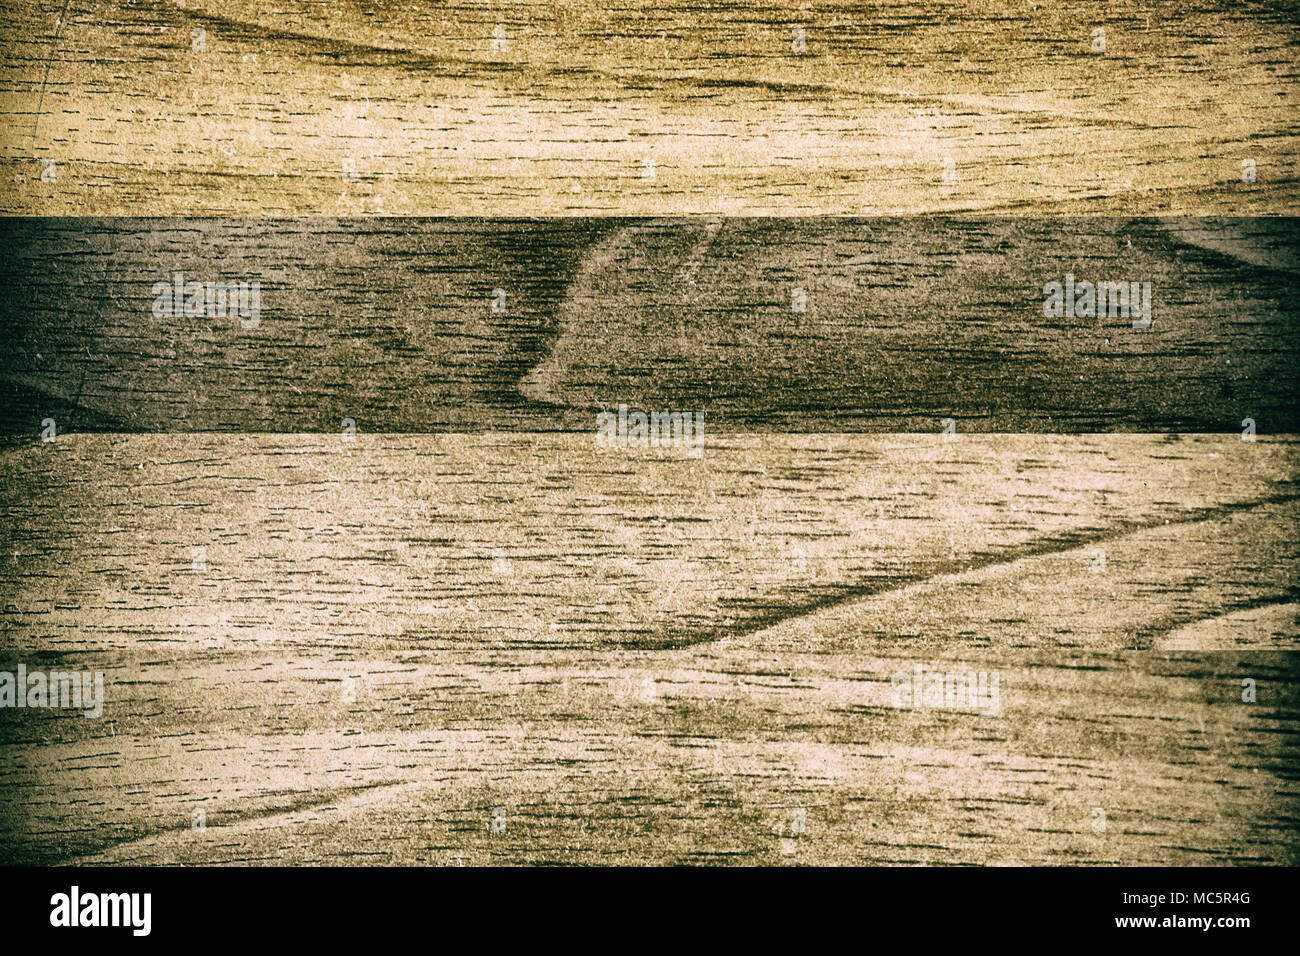 Holz Textur, leere Holz Hintergrund, rissige Oberfläche. Stockfoto